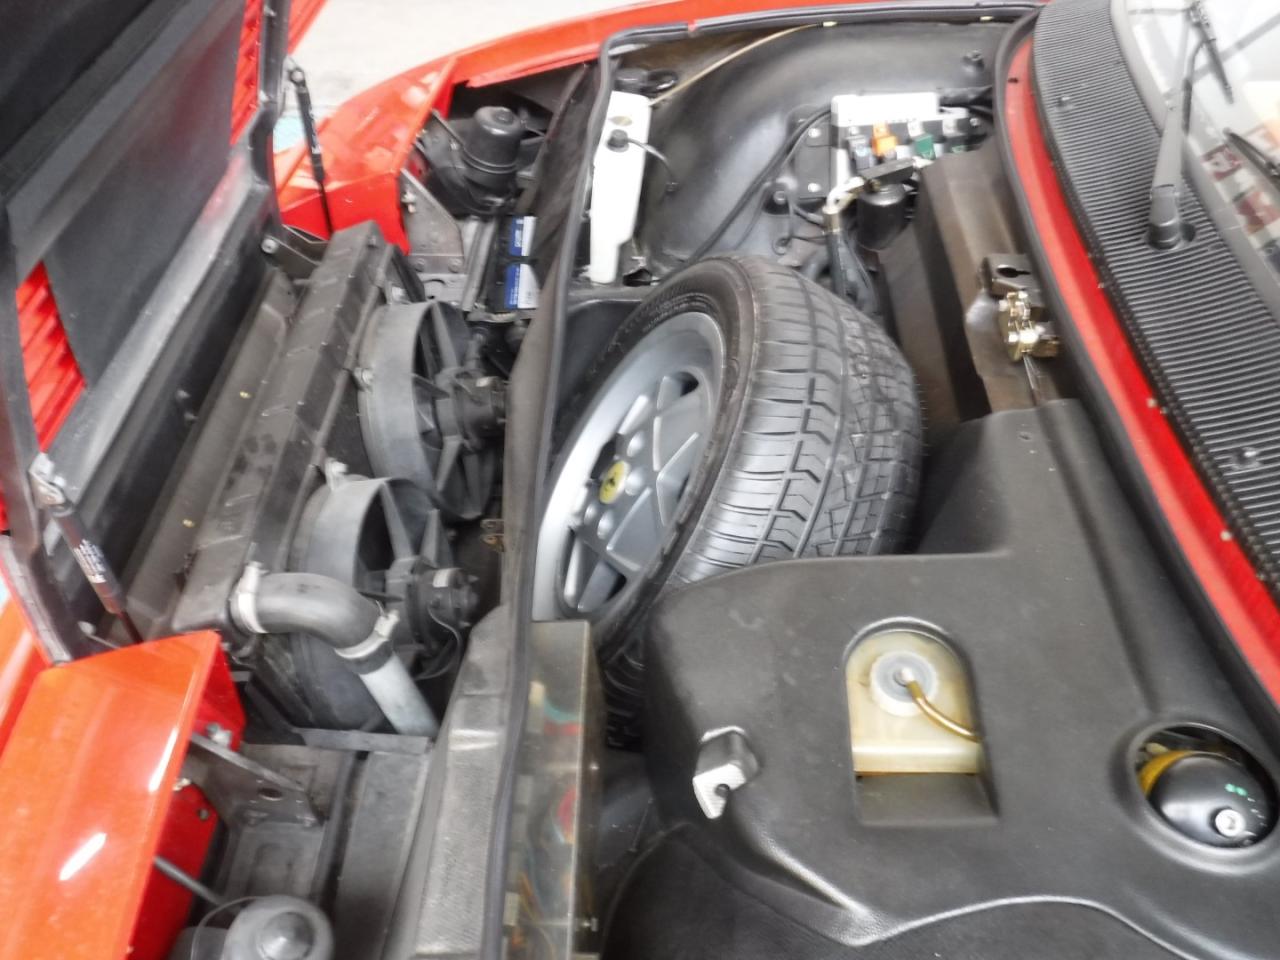 1988 Ferrari Mondial cabrio